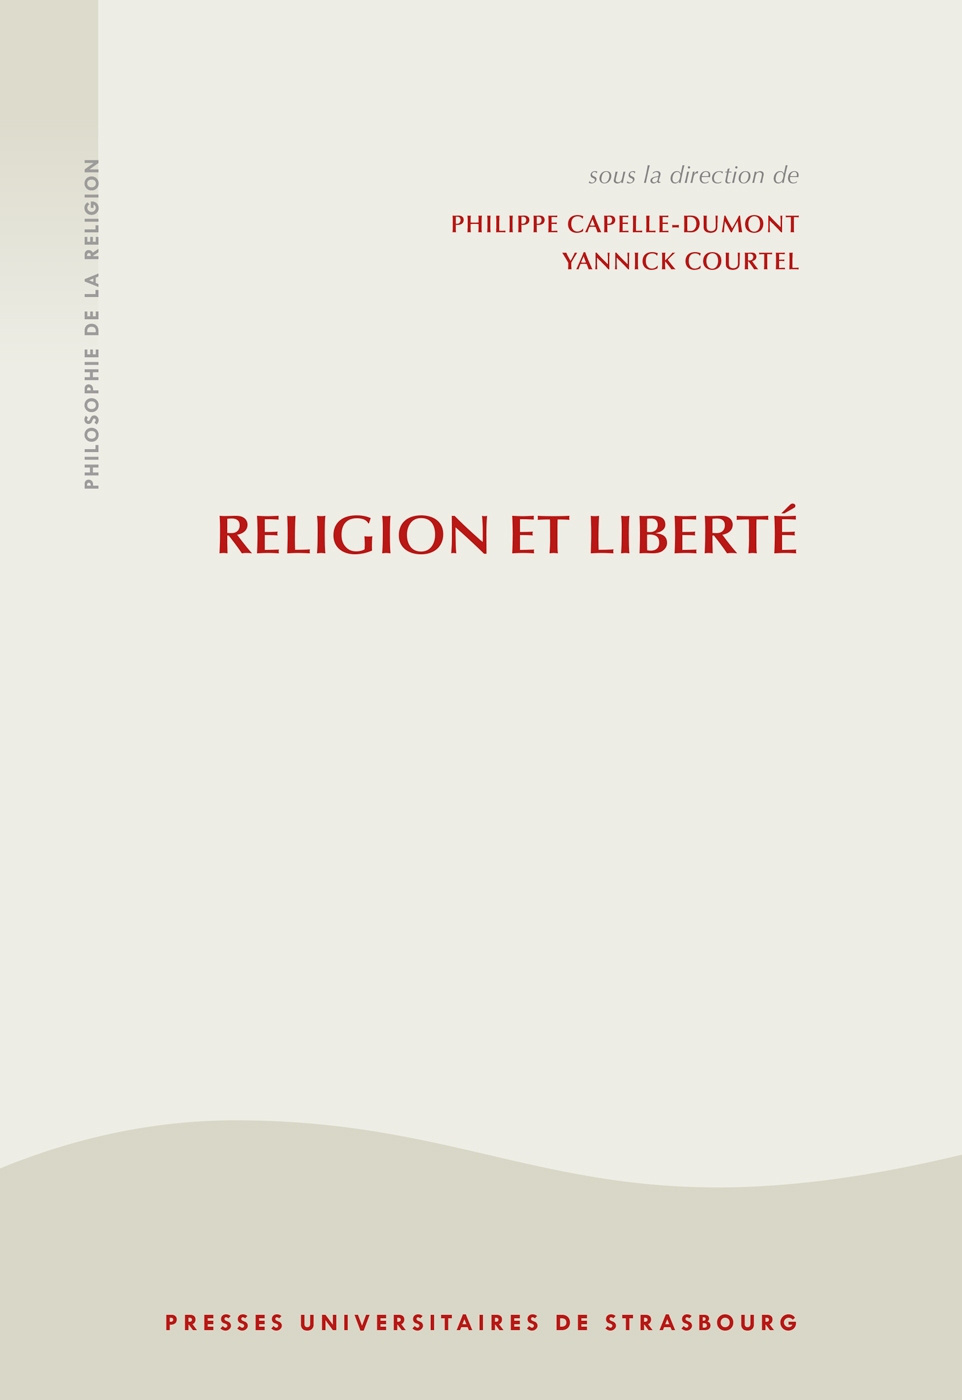 Religion et liberté